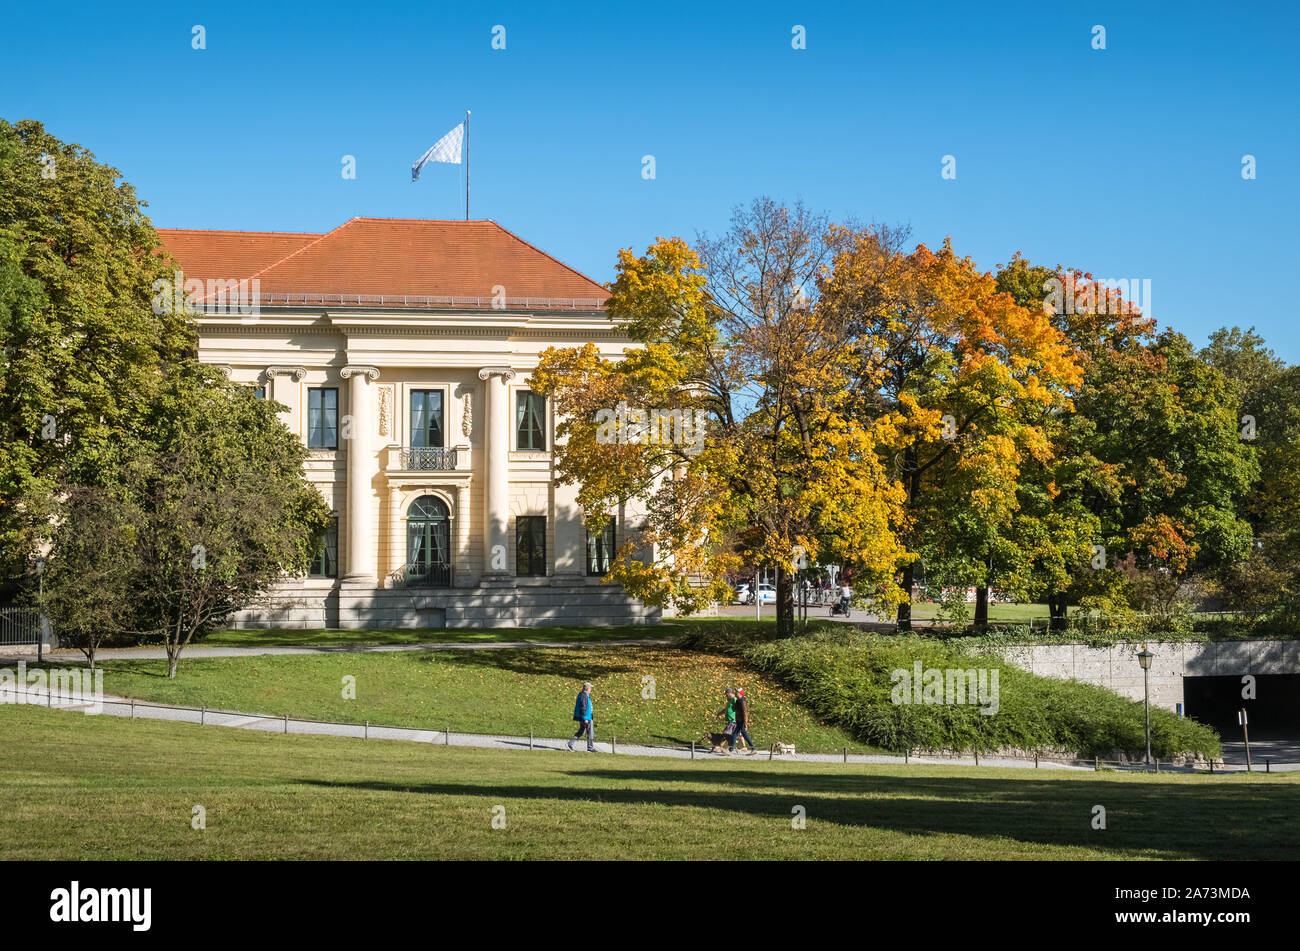 München, Bayern, Deutschland. Externe Ansicht des Prinz-Carl-Palais, ein Herrenhaus im Stil des frühen Klassizismus gebaut, auch bekannt als Palais Salabert. Stockfoto